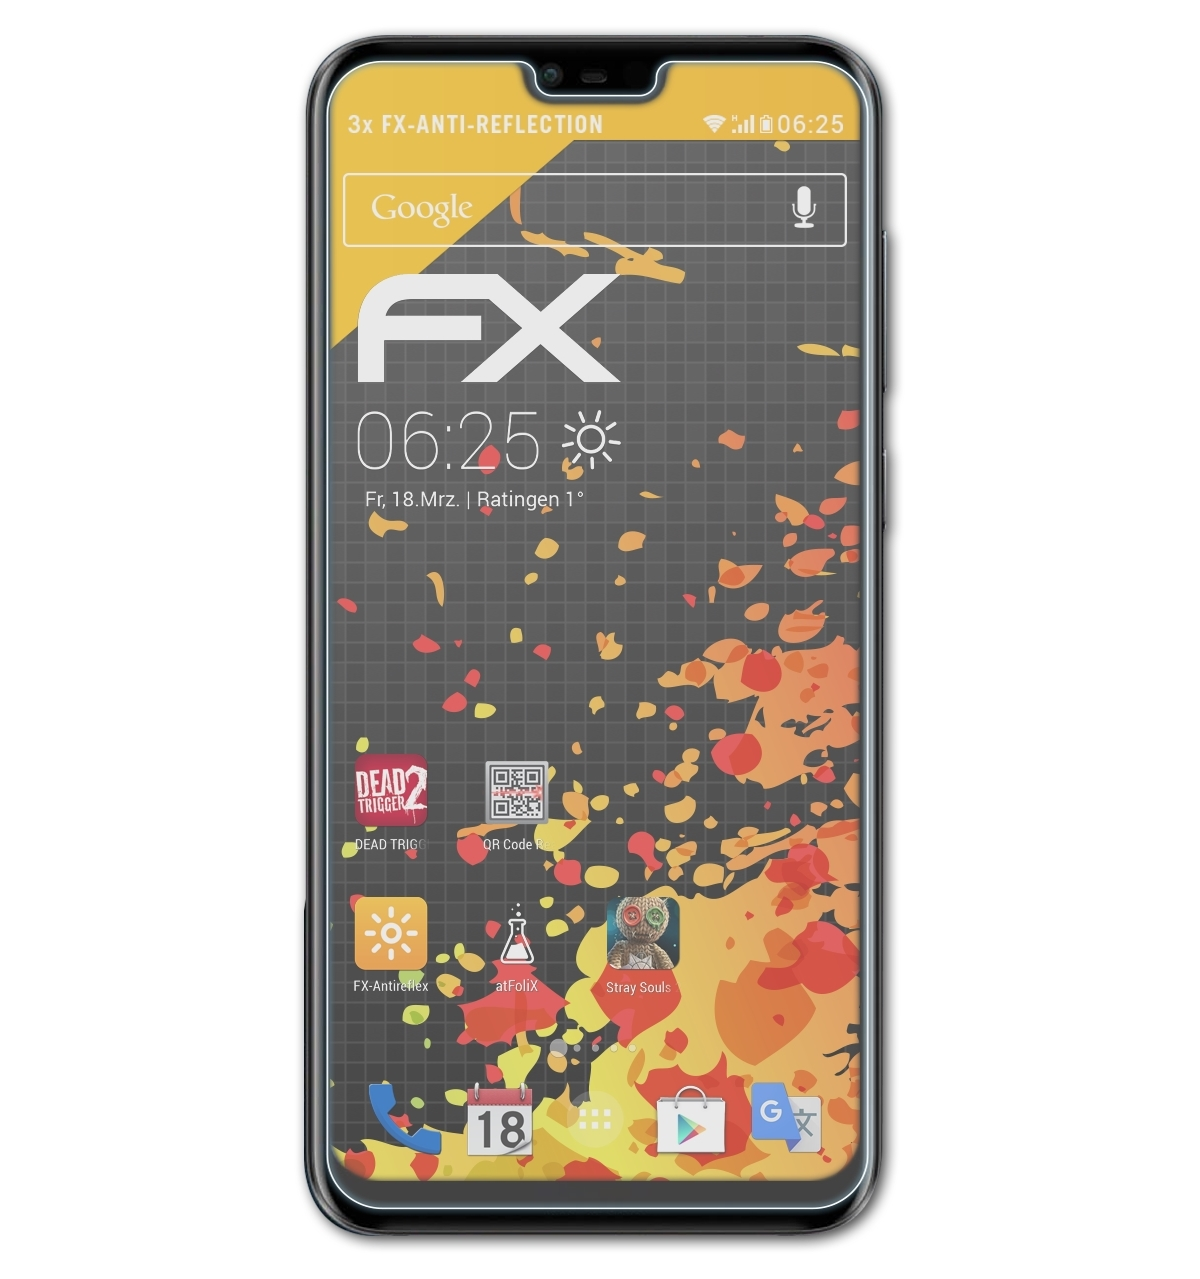 ATFOLIX 3x Nokia Displayschutz(für 6.1 Plus) FX-Antireflex